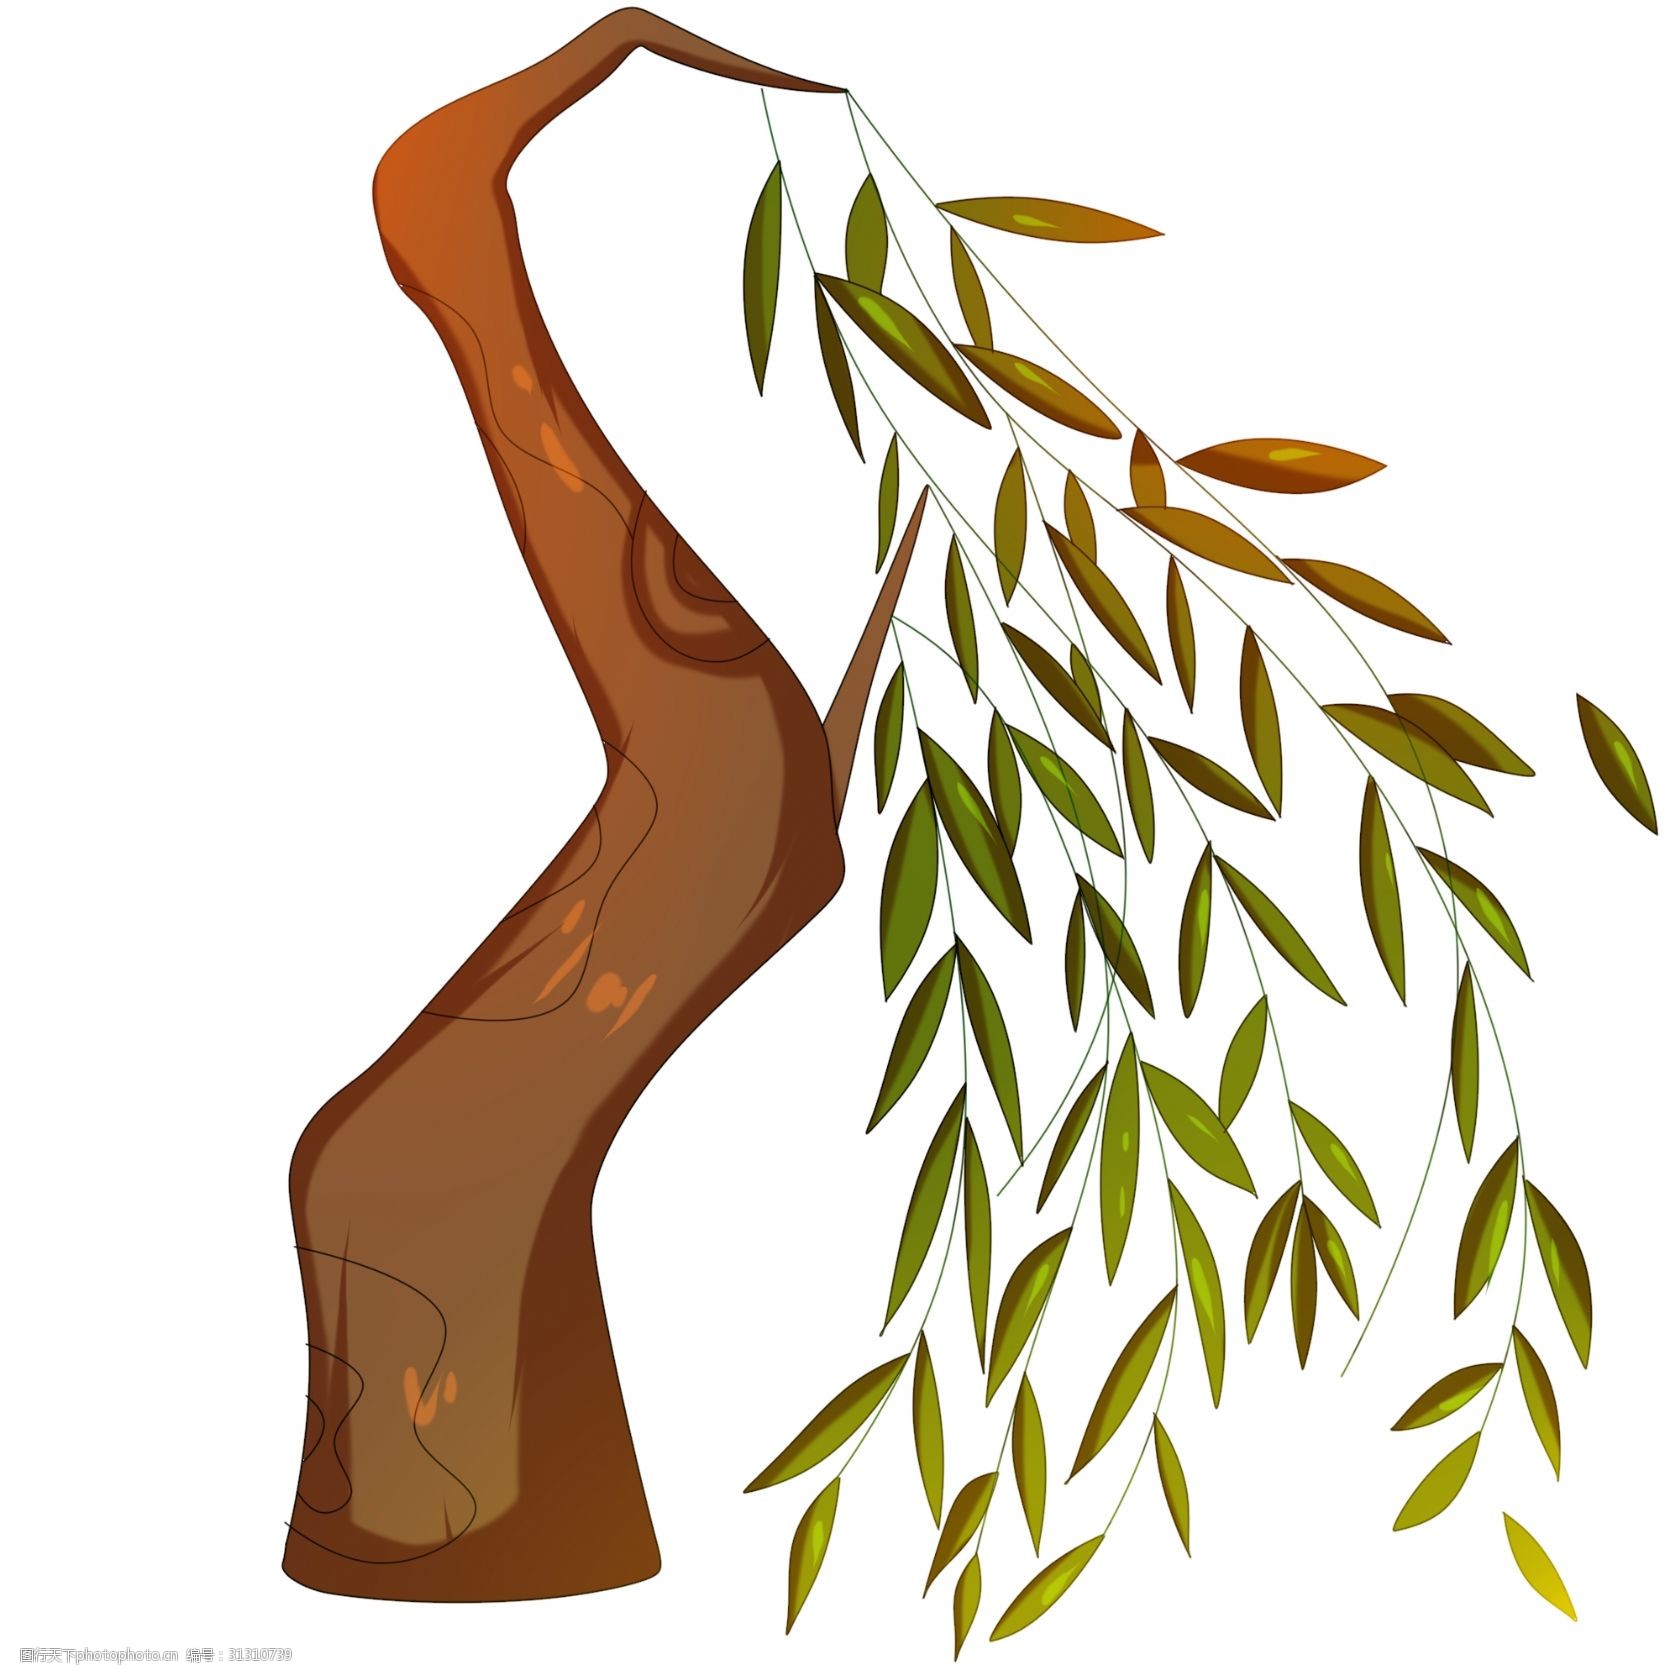 关键词:棕色的柳树手绘插画 手绘柳树 卡通柳树 绿色的叶子 绿植装饰